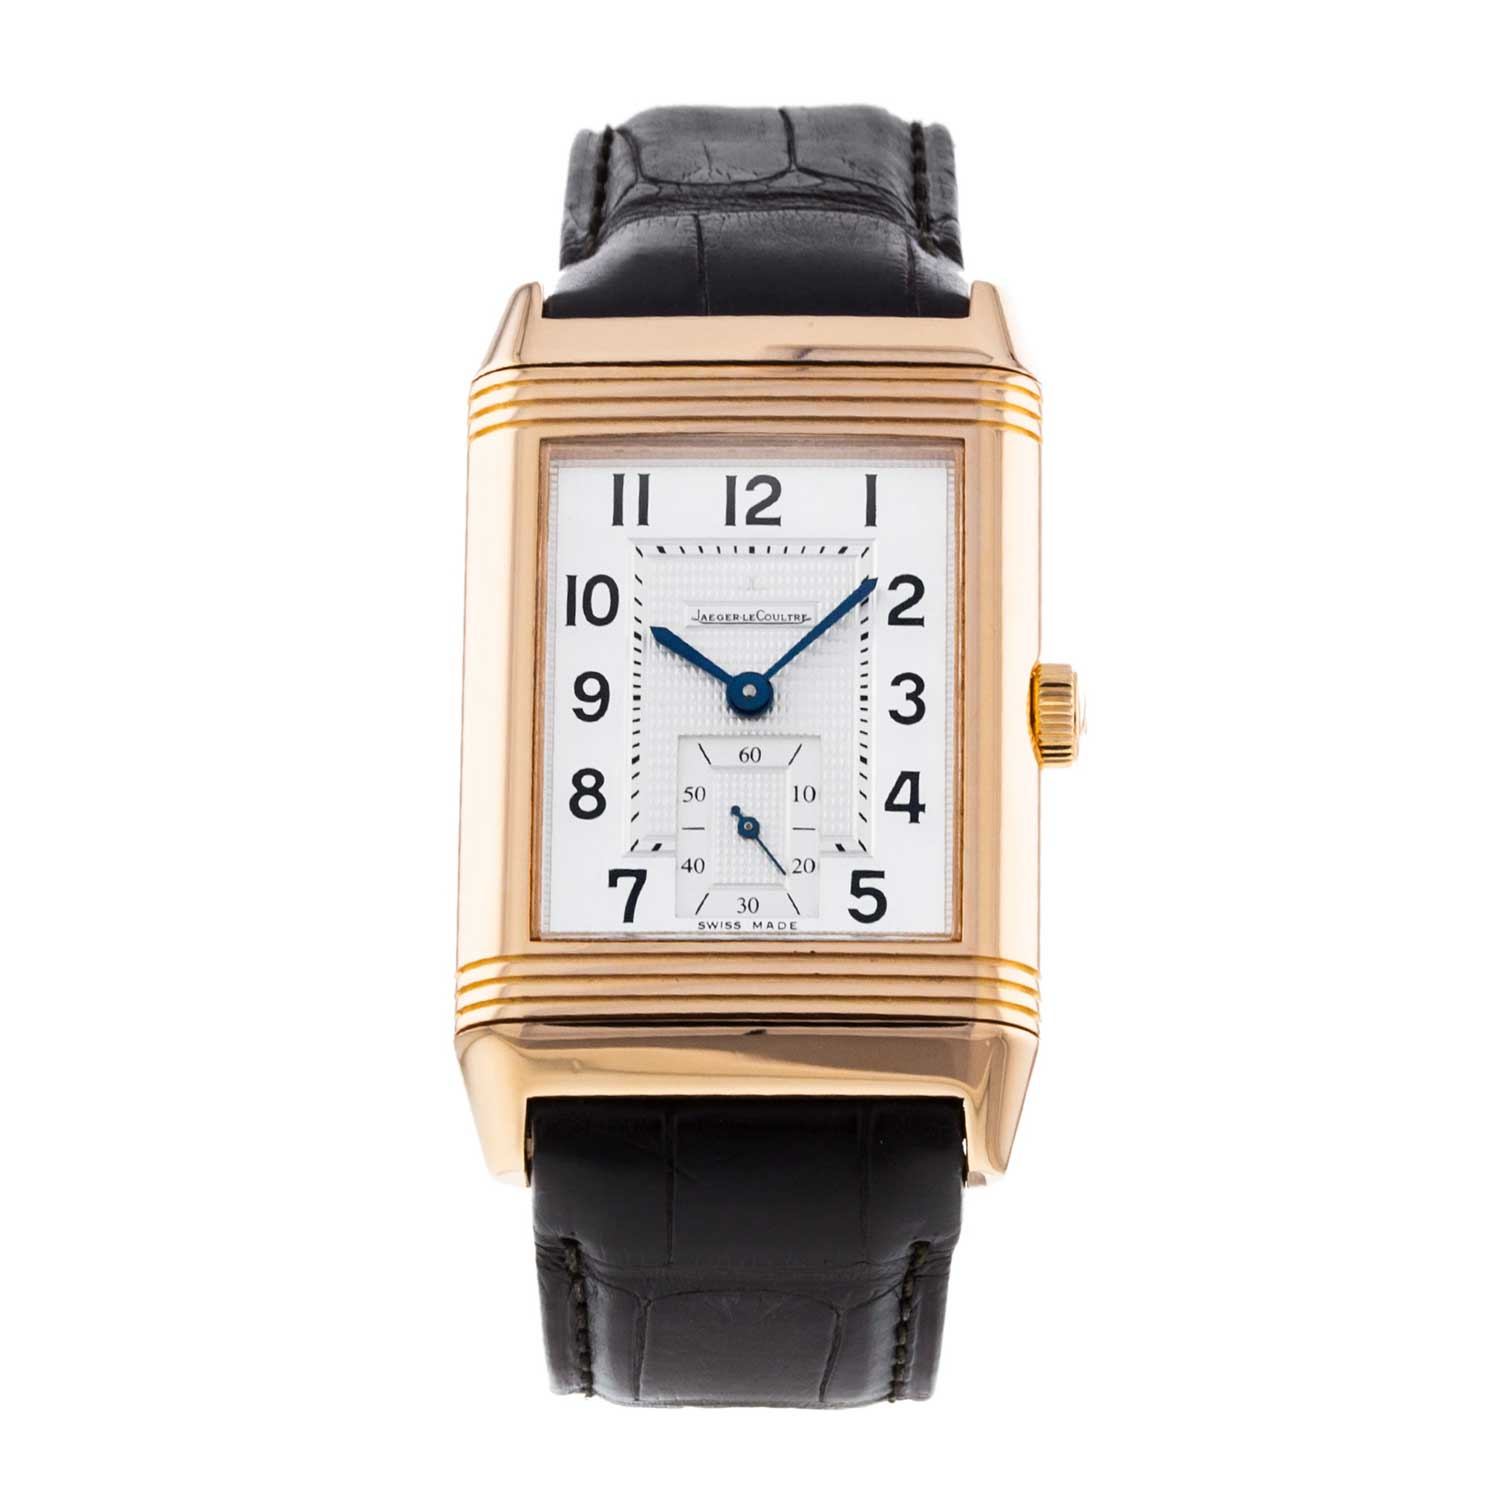 Reverso Classique tại cửa hàng của chúng tôi là một chiếc đồng hồ lên dây cót bằng tay có vỏ bằng vàng hồng 18k 48,5mm x 30mm bao quanh mặt số màu bạc.